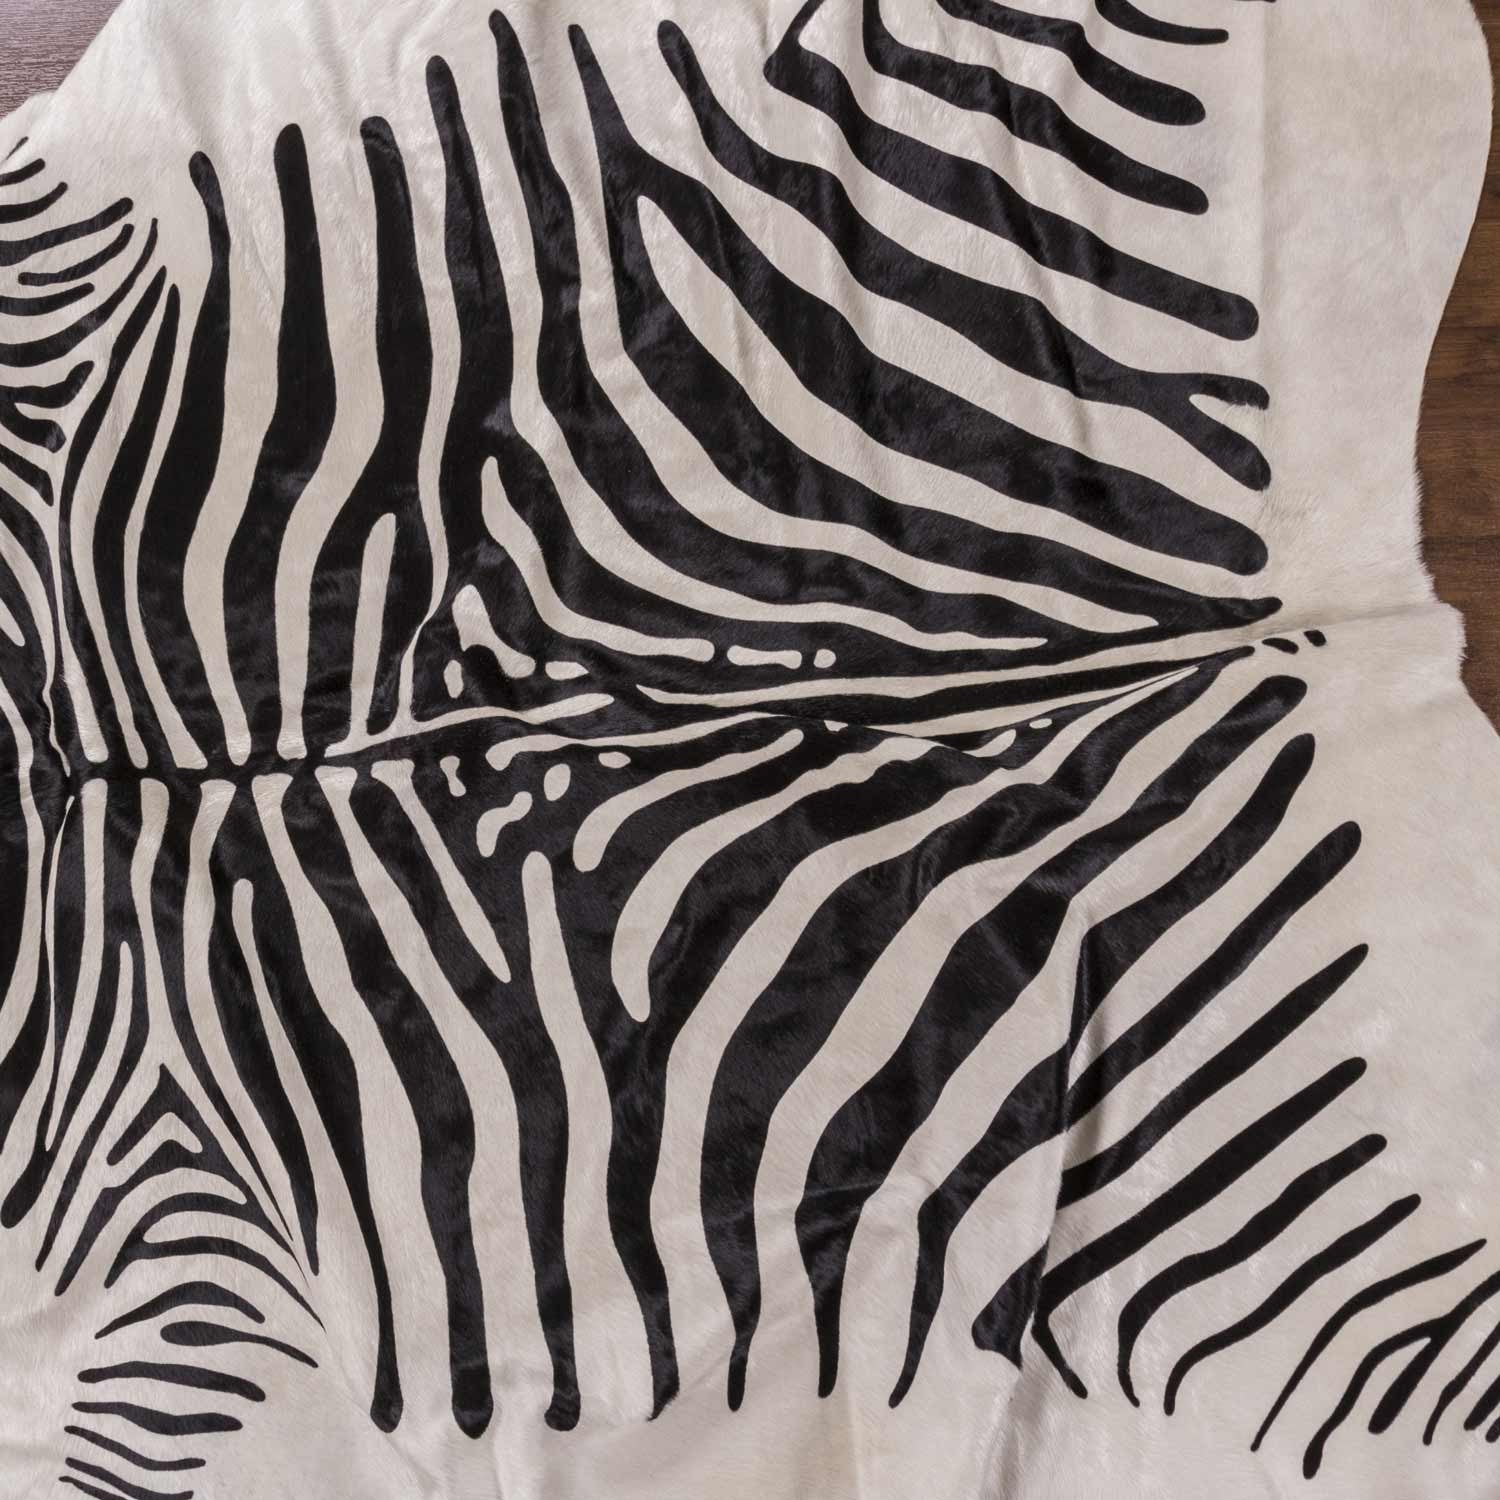 Zebra Africa Print Cowhide Rug - Rodeo Cowhide RugsWhite Based